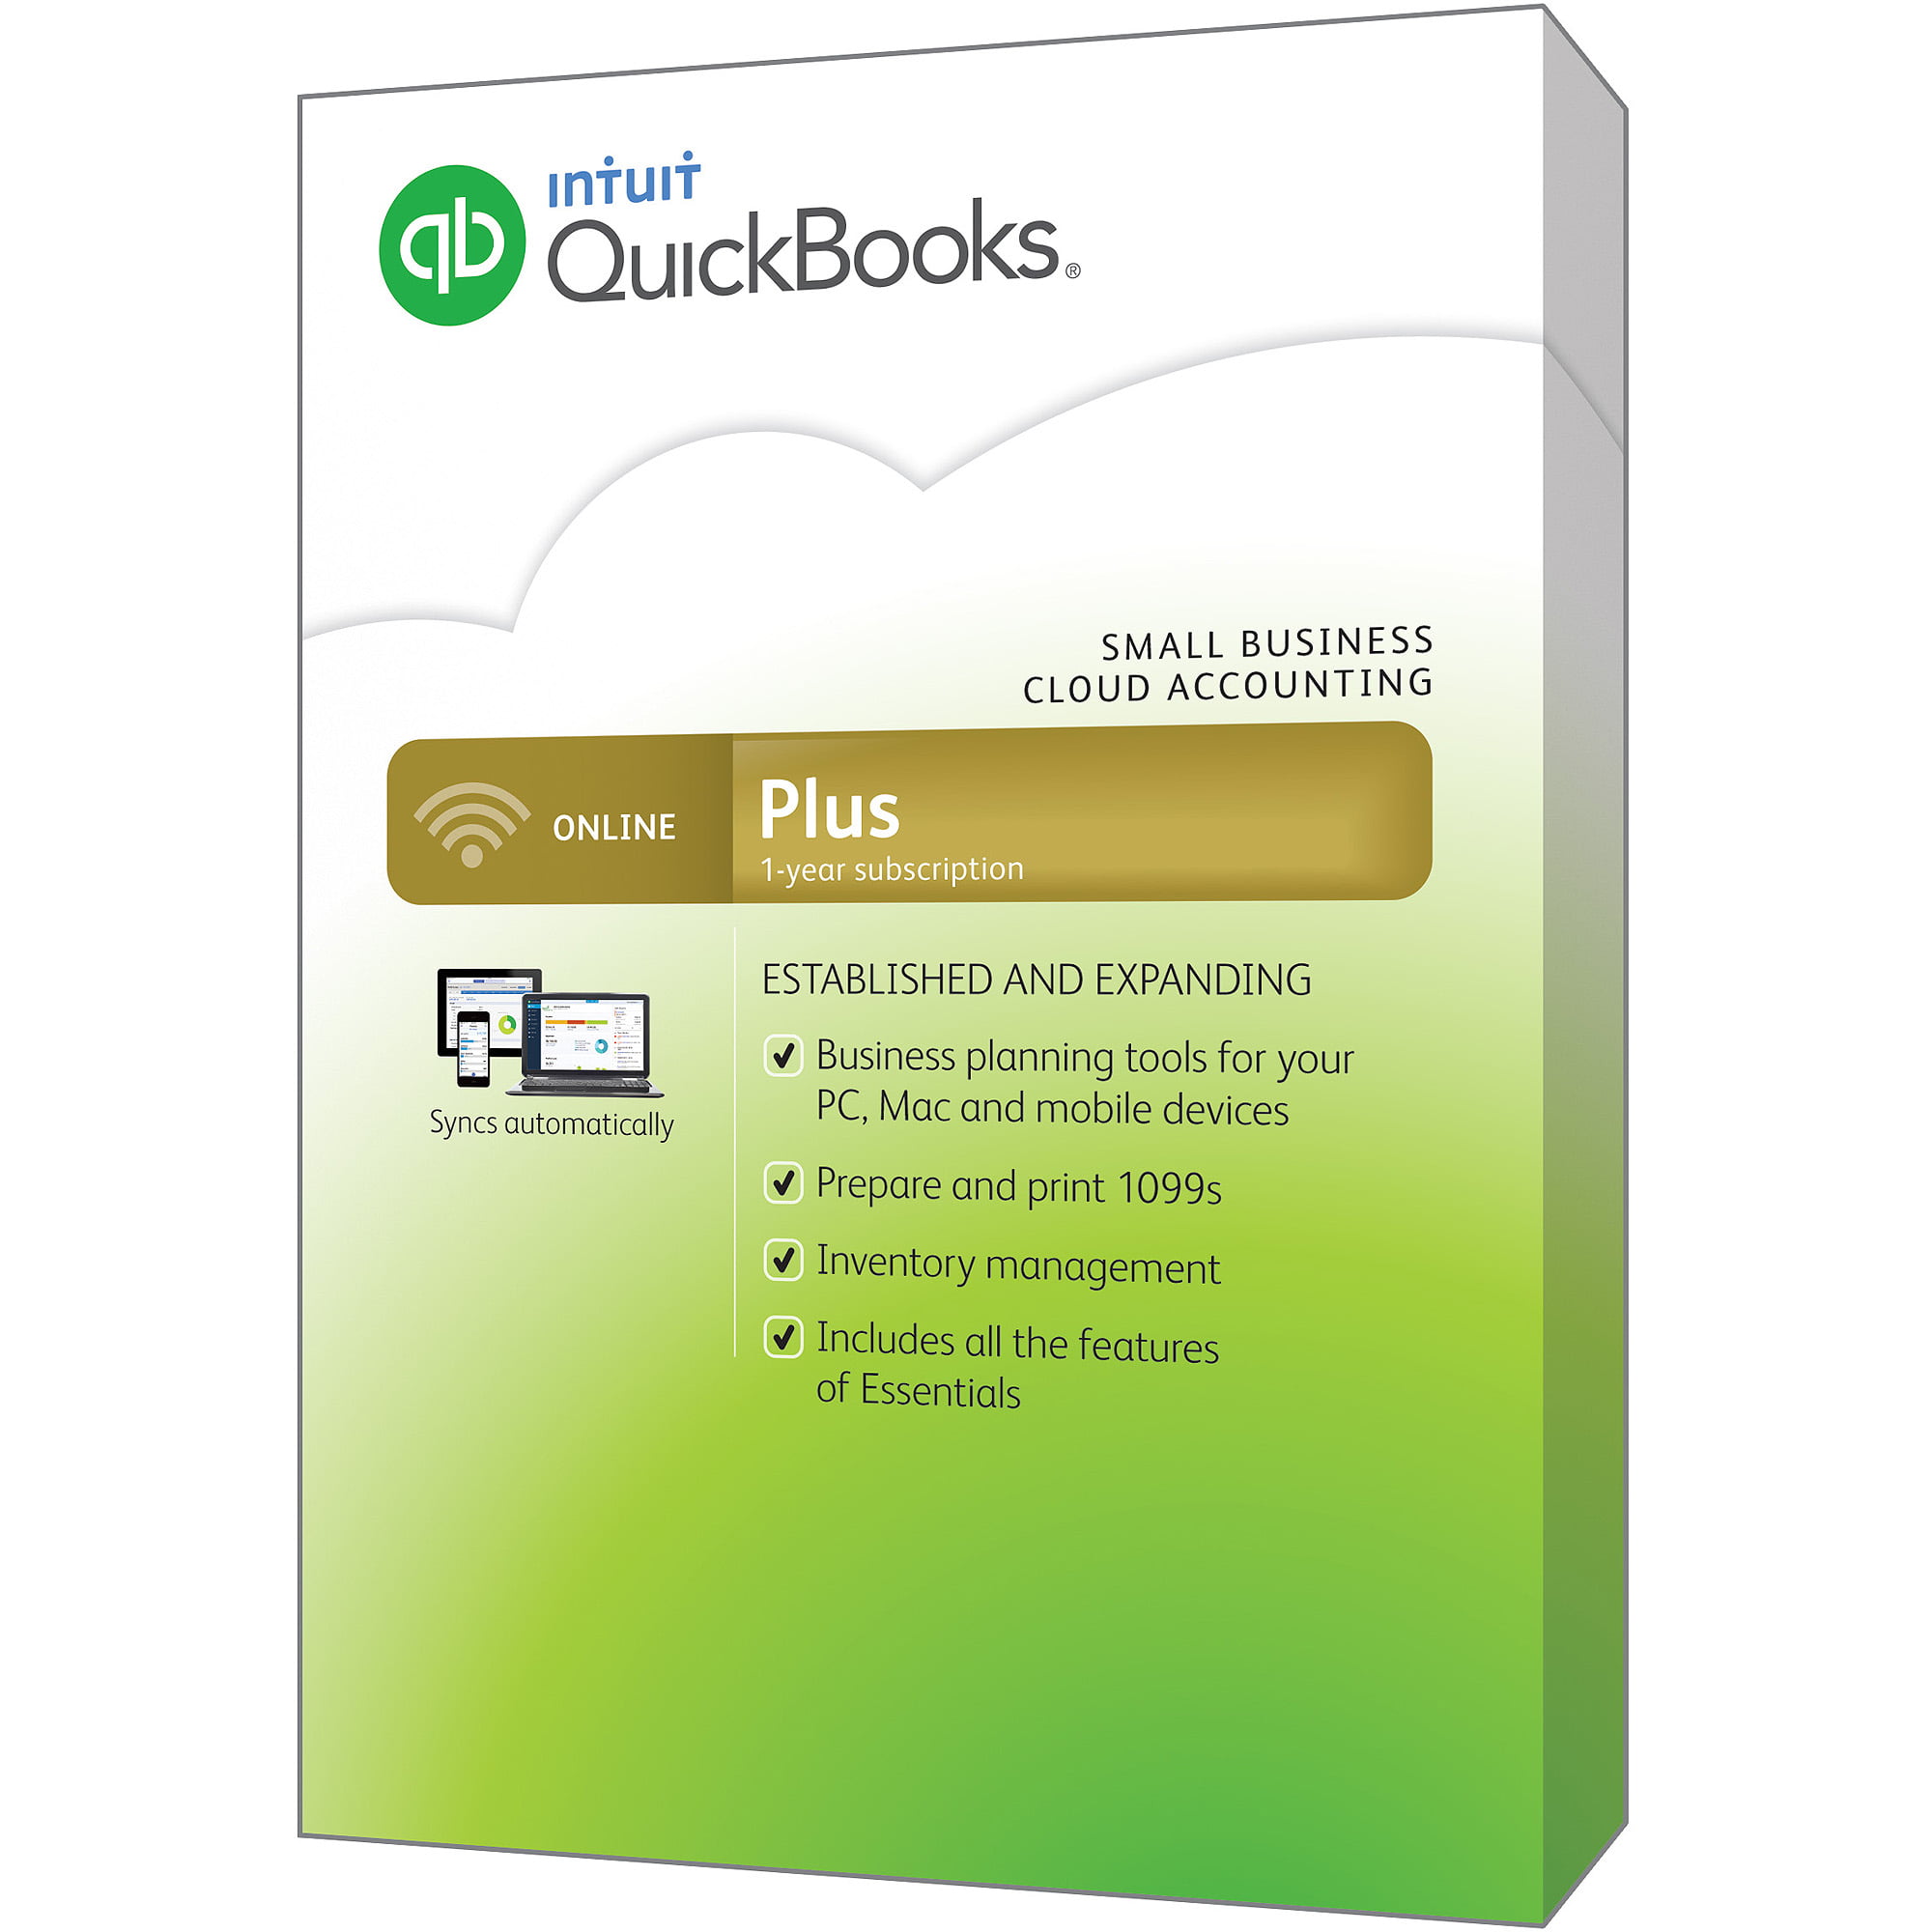 intuit quickbooks login online